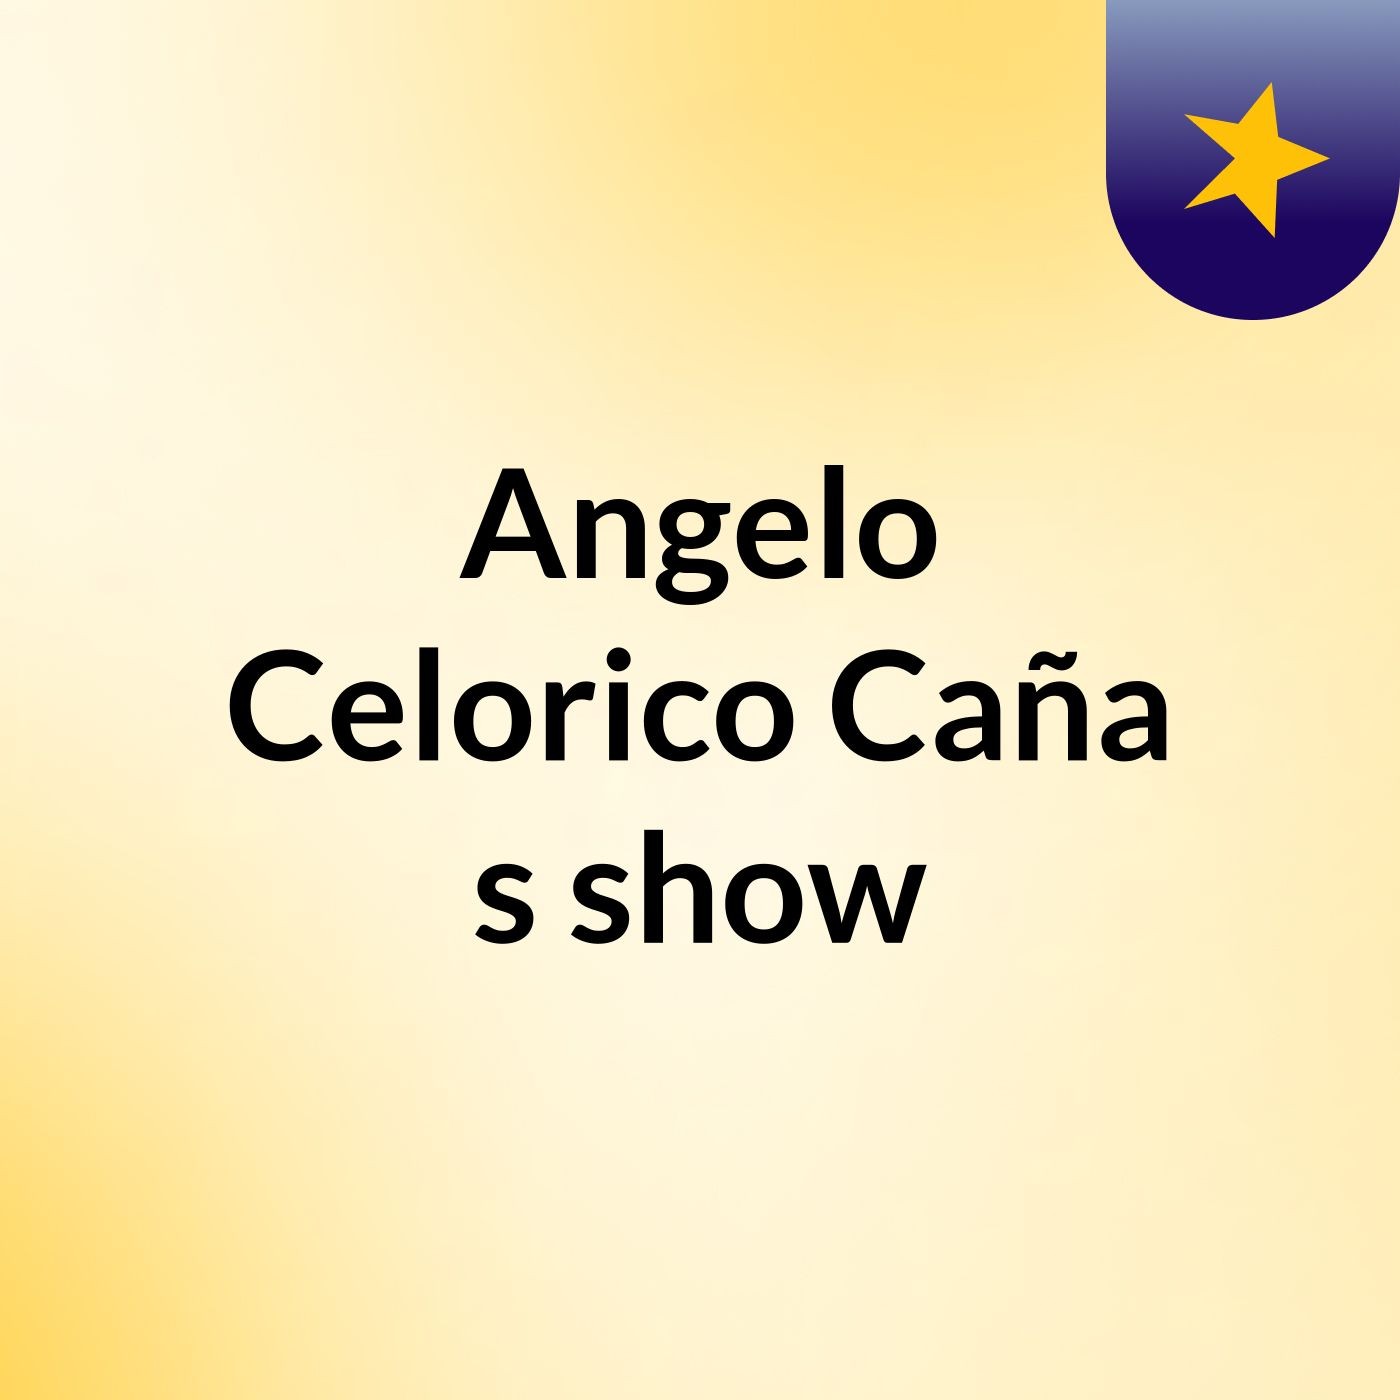 Angelo Celorico Caña's show